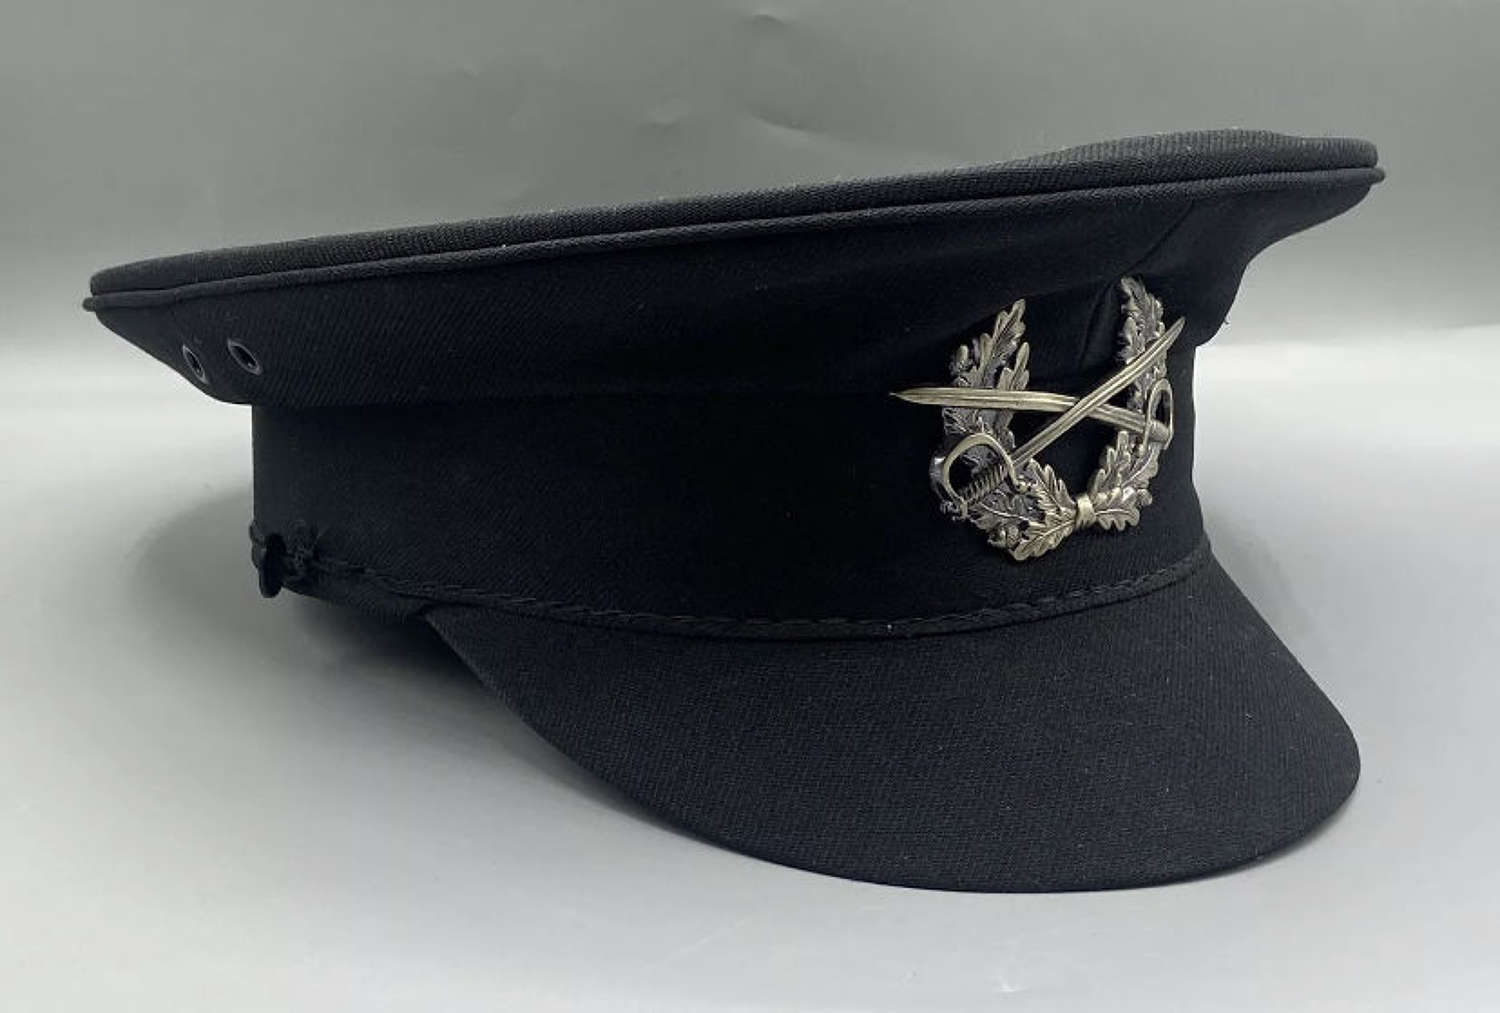 Post Ww2 West German Heer Army Forces Officers Visor Cap & Cap Badge